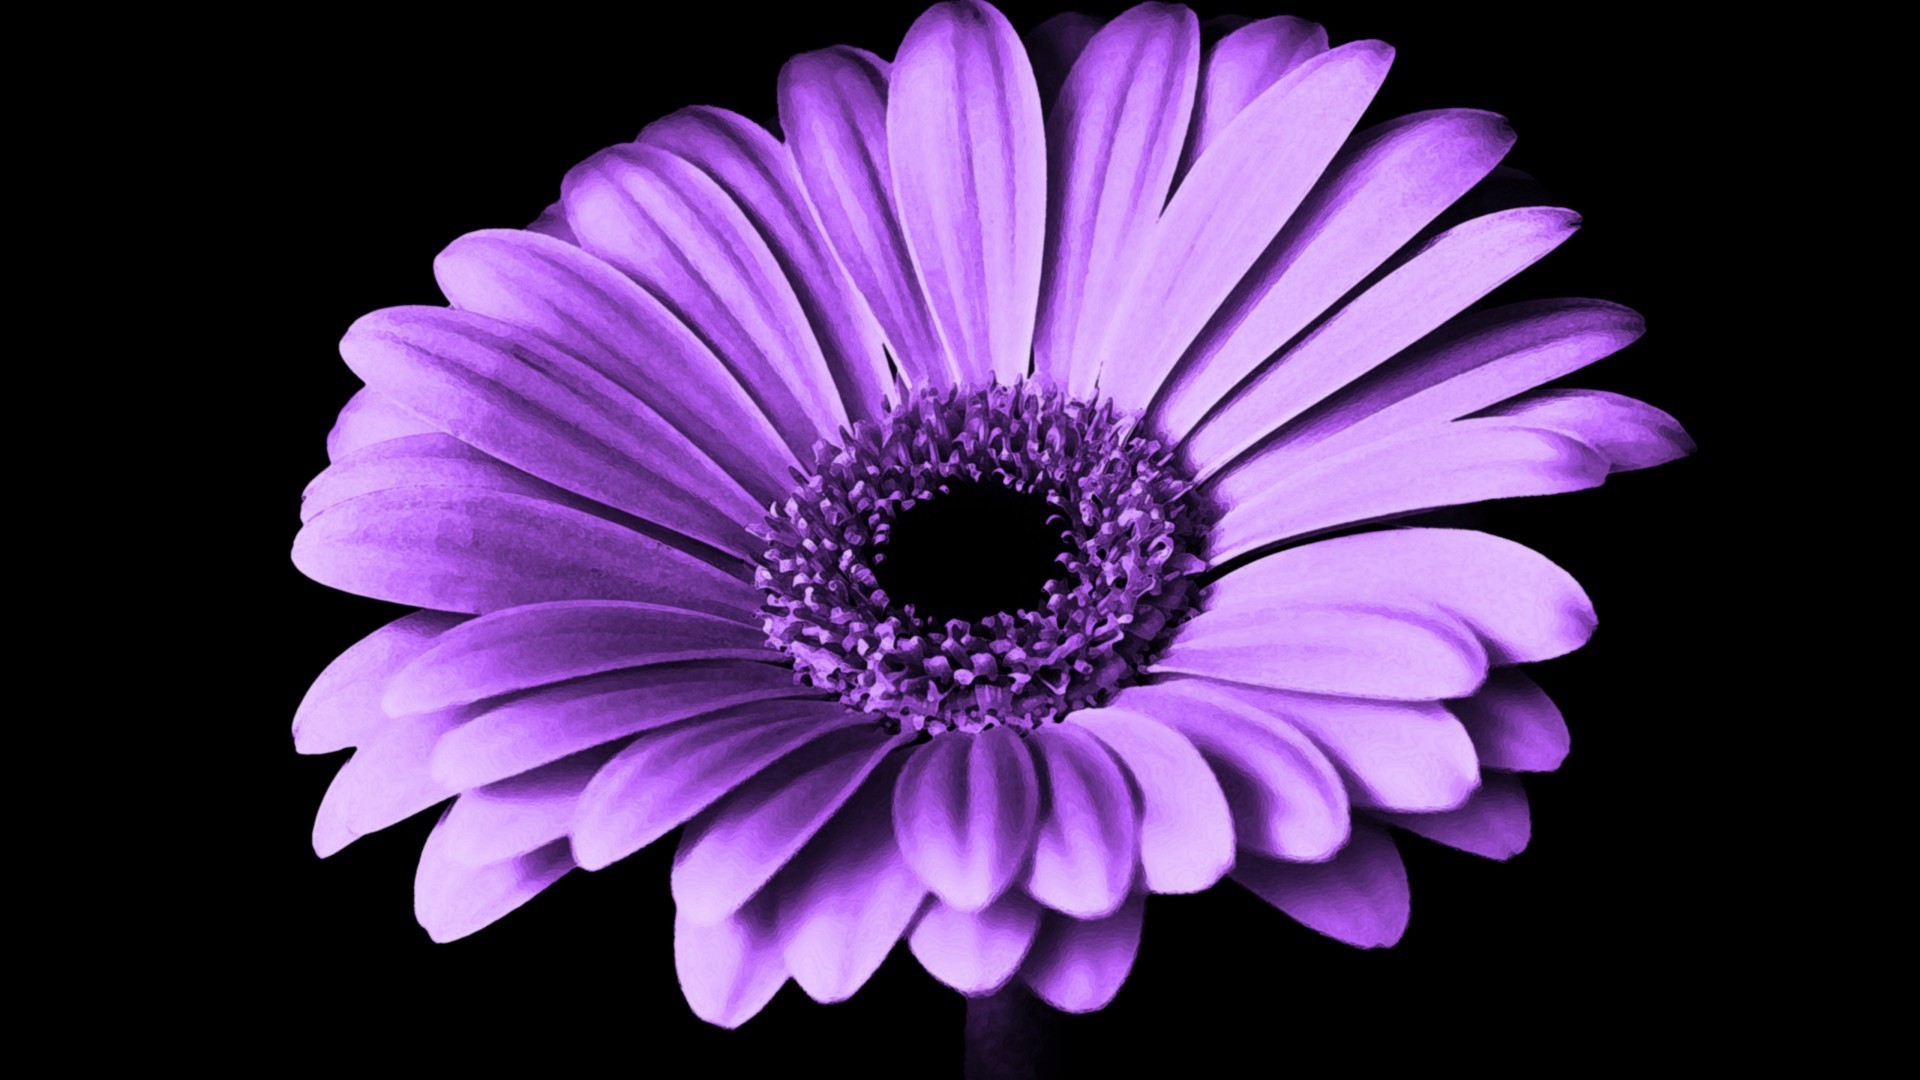 Wallpaper Violet Daisy Flower 1920x1080